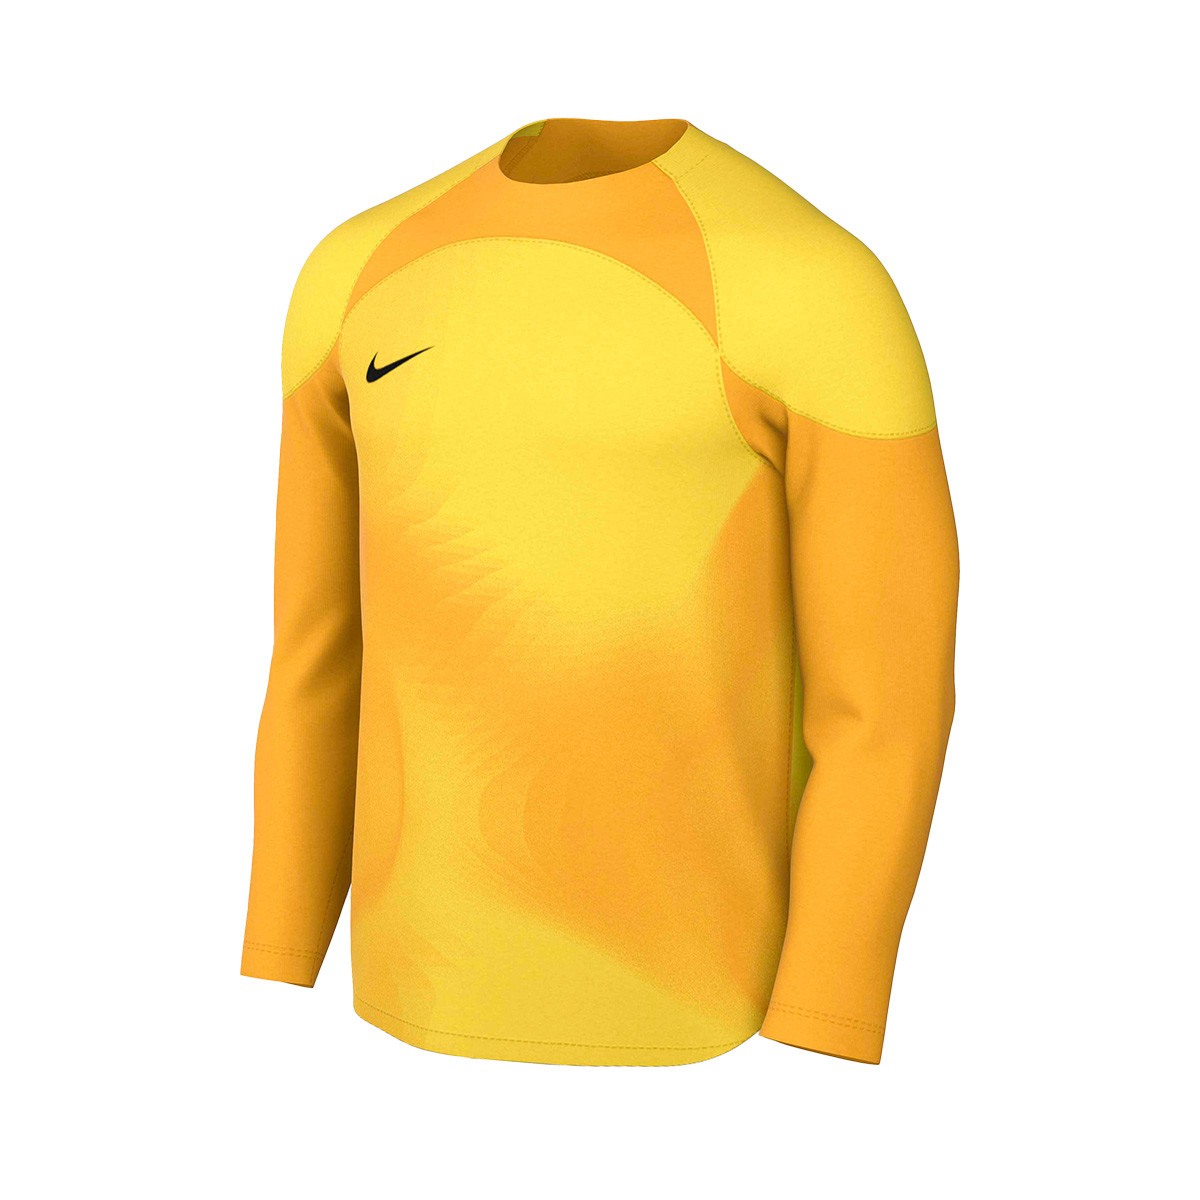 Ladrillo perturbación cápsula Camiseta Nike Gardien IV GK m/l Tour yellow-University gold - Fútbol Emotion